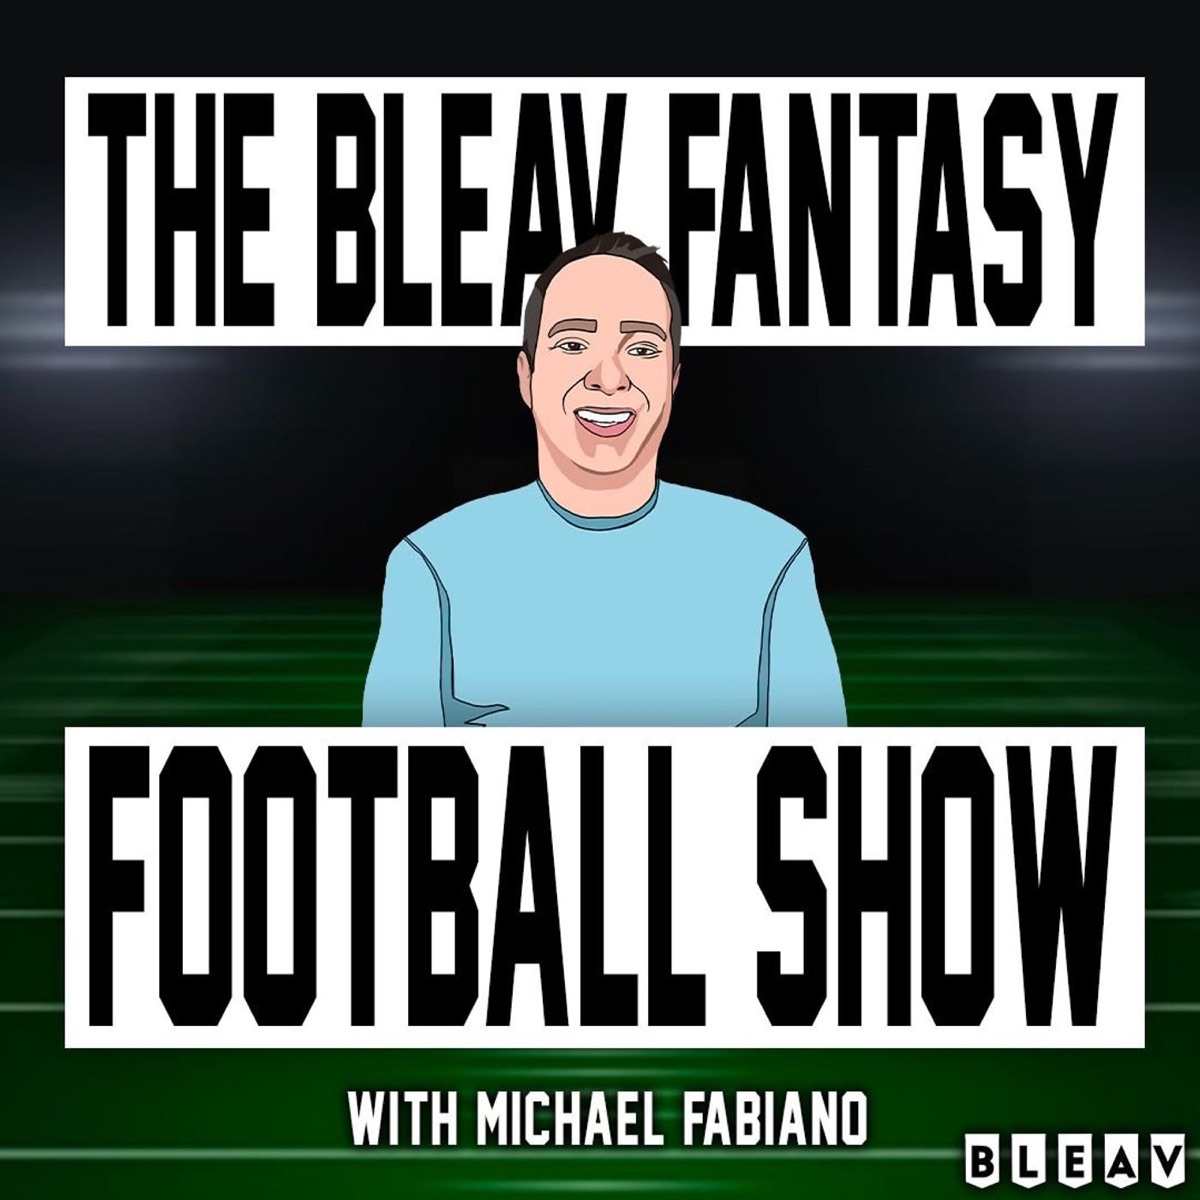 michael fabiano fantasy football rankings